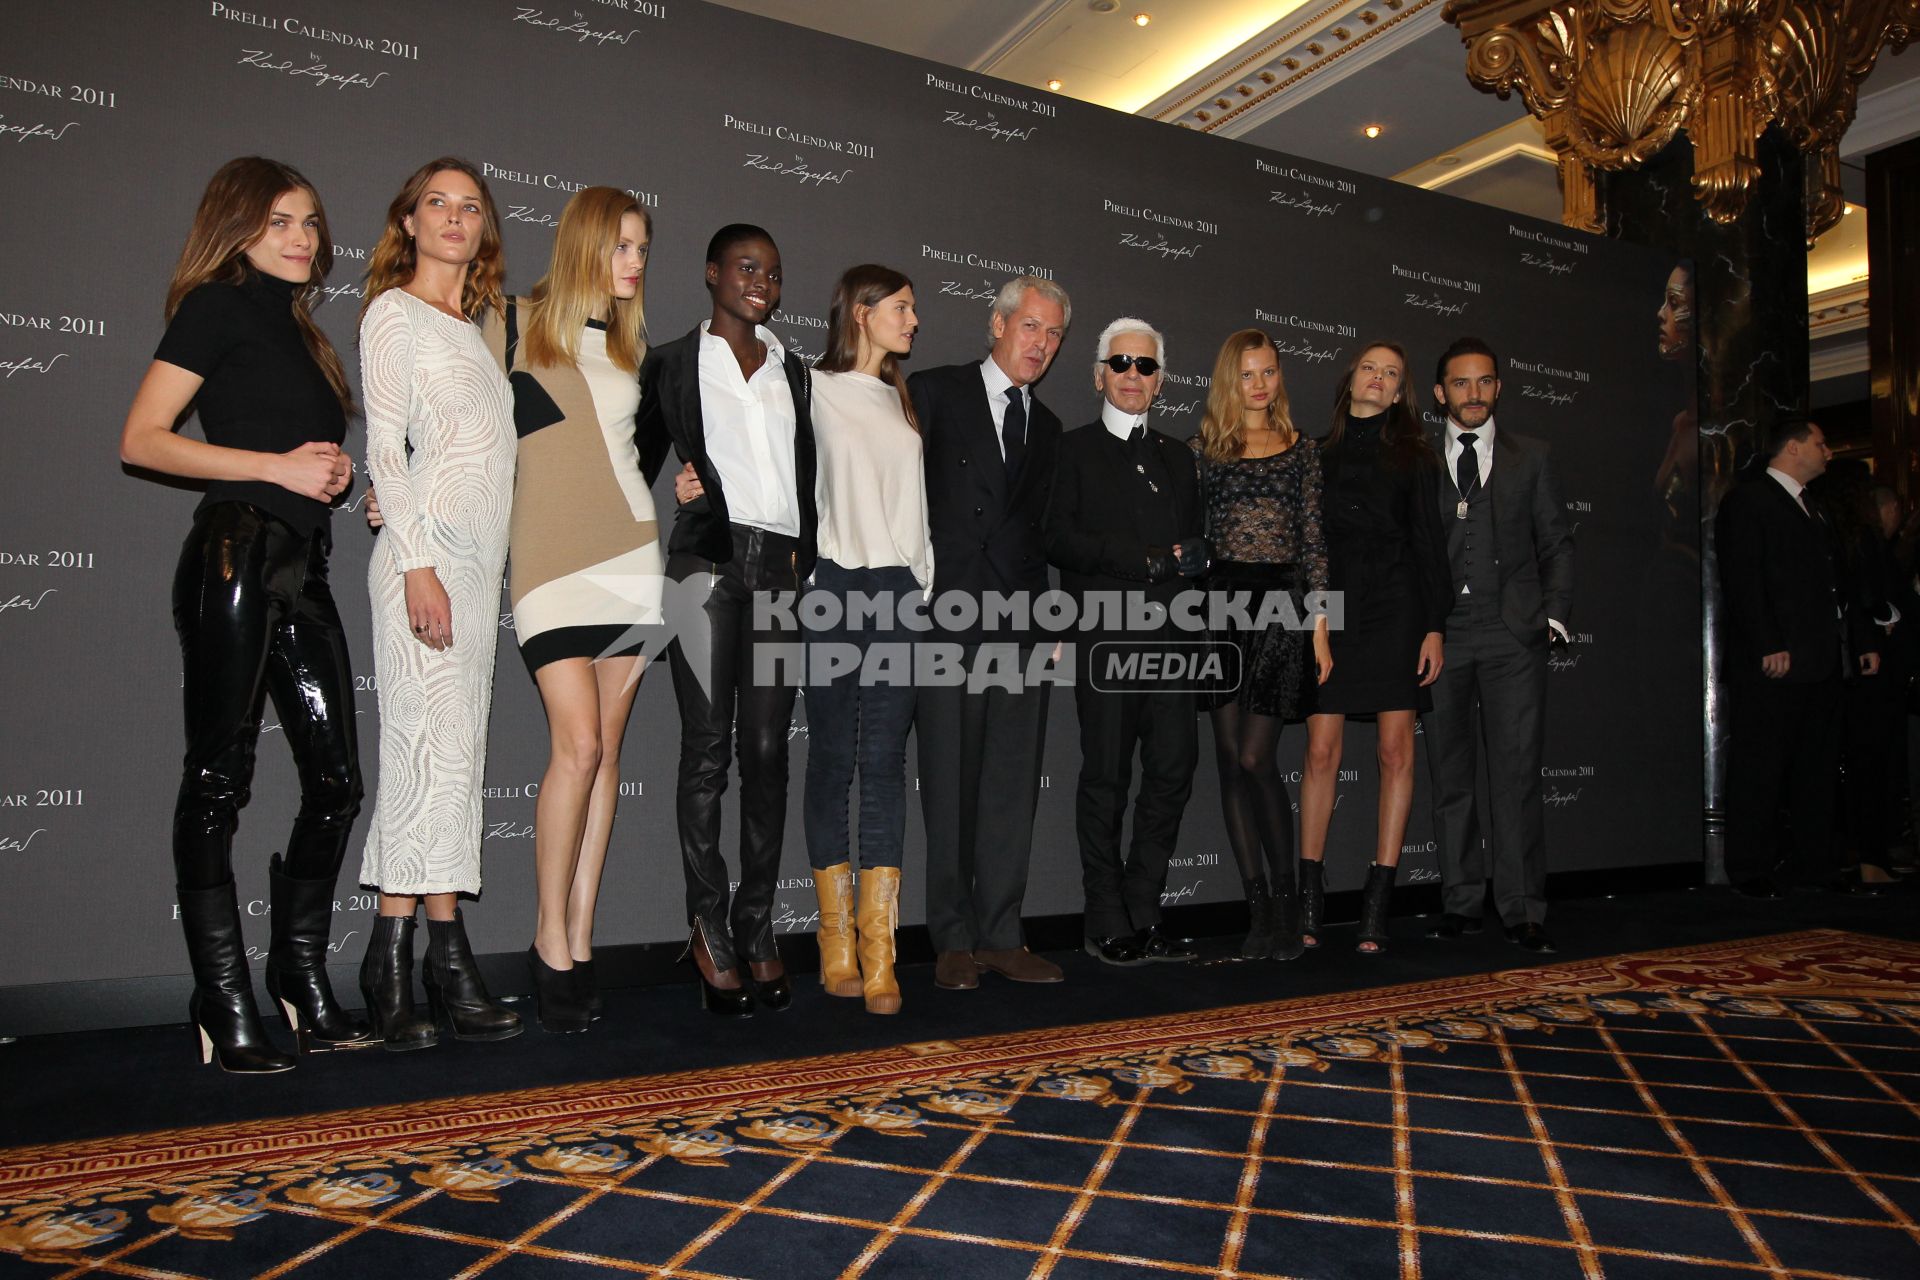 Президент итальянской компании `Pirelli` Марко Тронкетти Провера (шестой слева) и модельер Карл Лагерфельд (четвертый справа) с моделями, которые участвовали в съемках для нового календаря Pirell, в отеле `Ritz Carlton`.